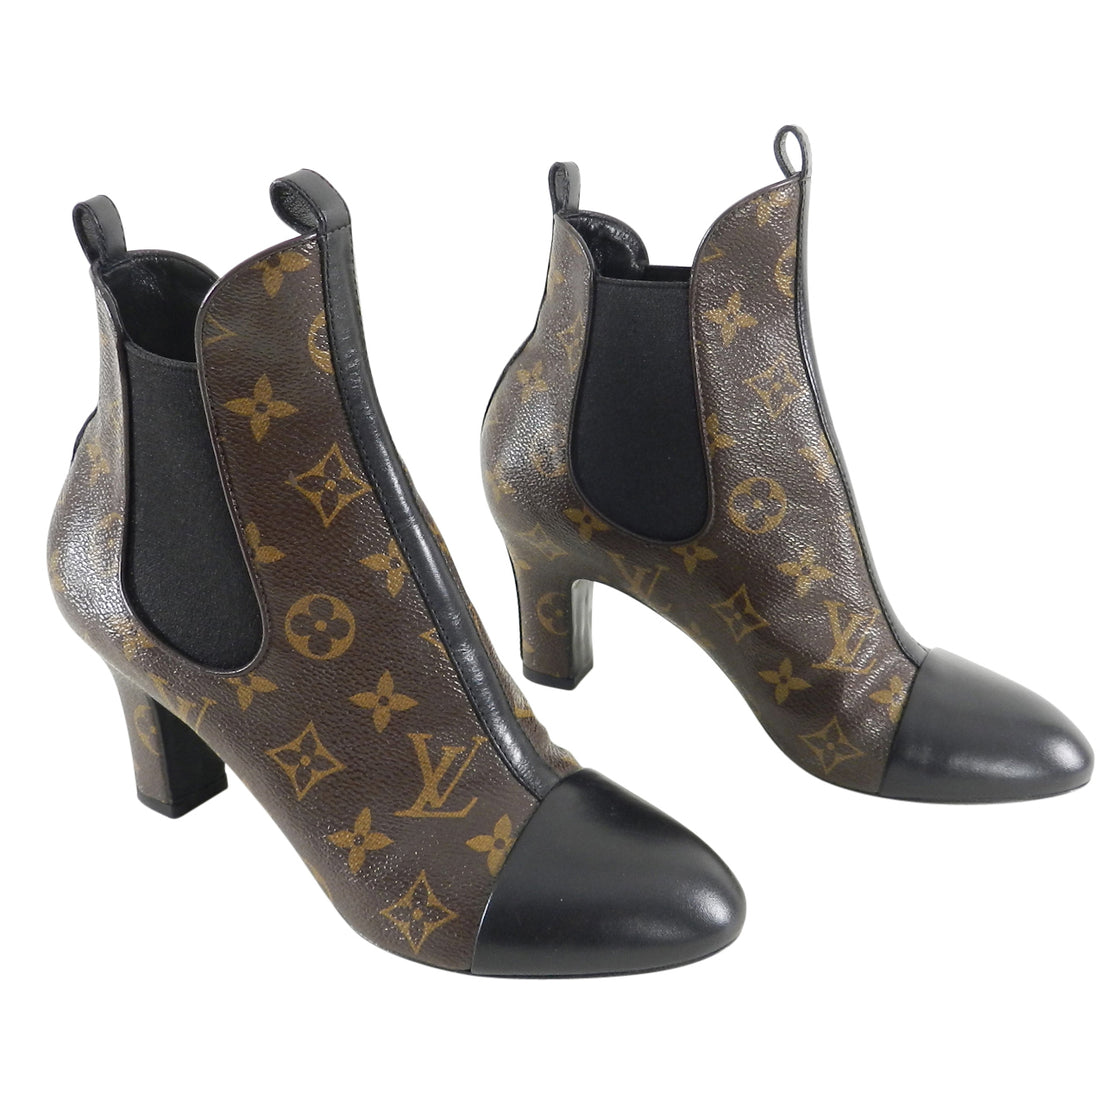 Pre-owned Louis Vuitton Perforated Peep-Toe Monogram Heels